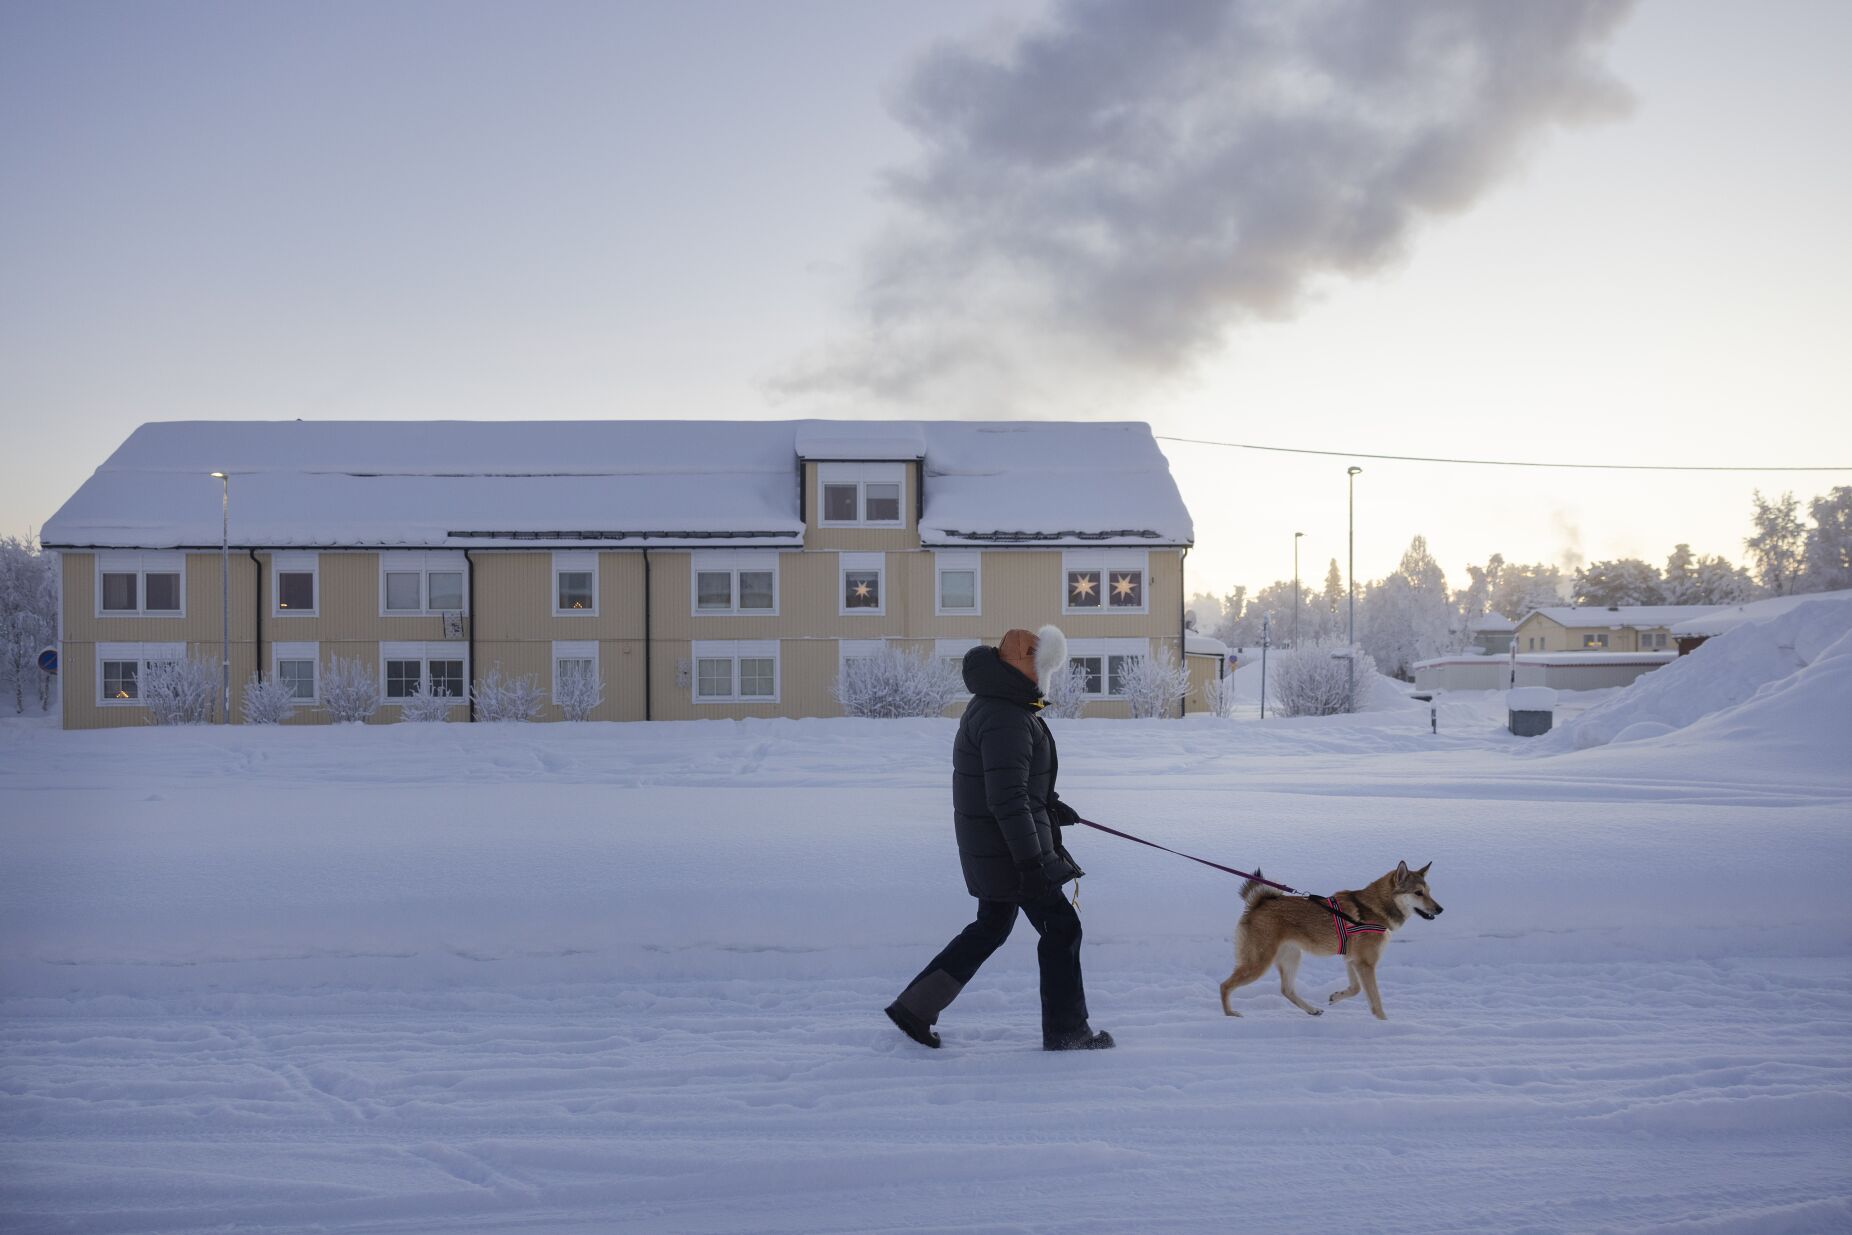 Países nórdicos enfrentam frio extremo (e casas ficam sem eletricidade) -  SIC Notícias